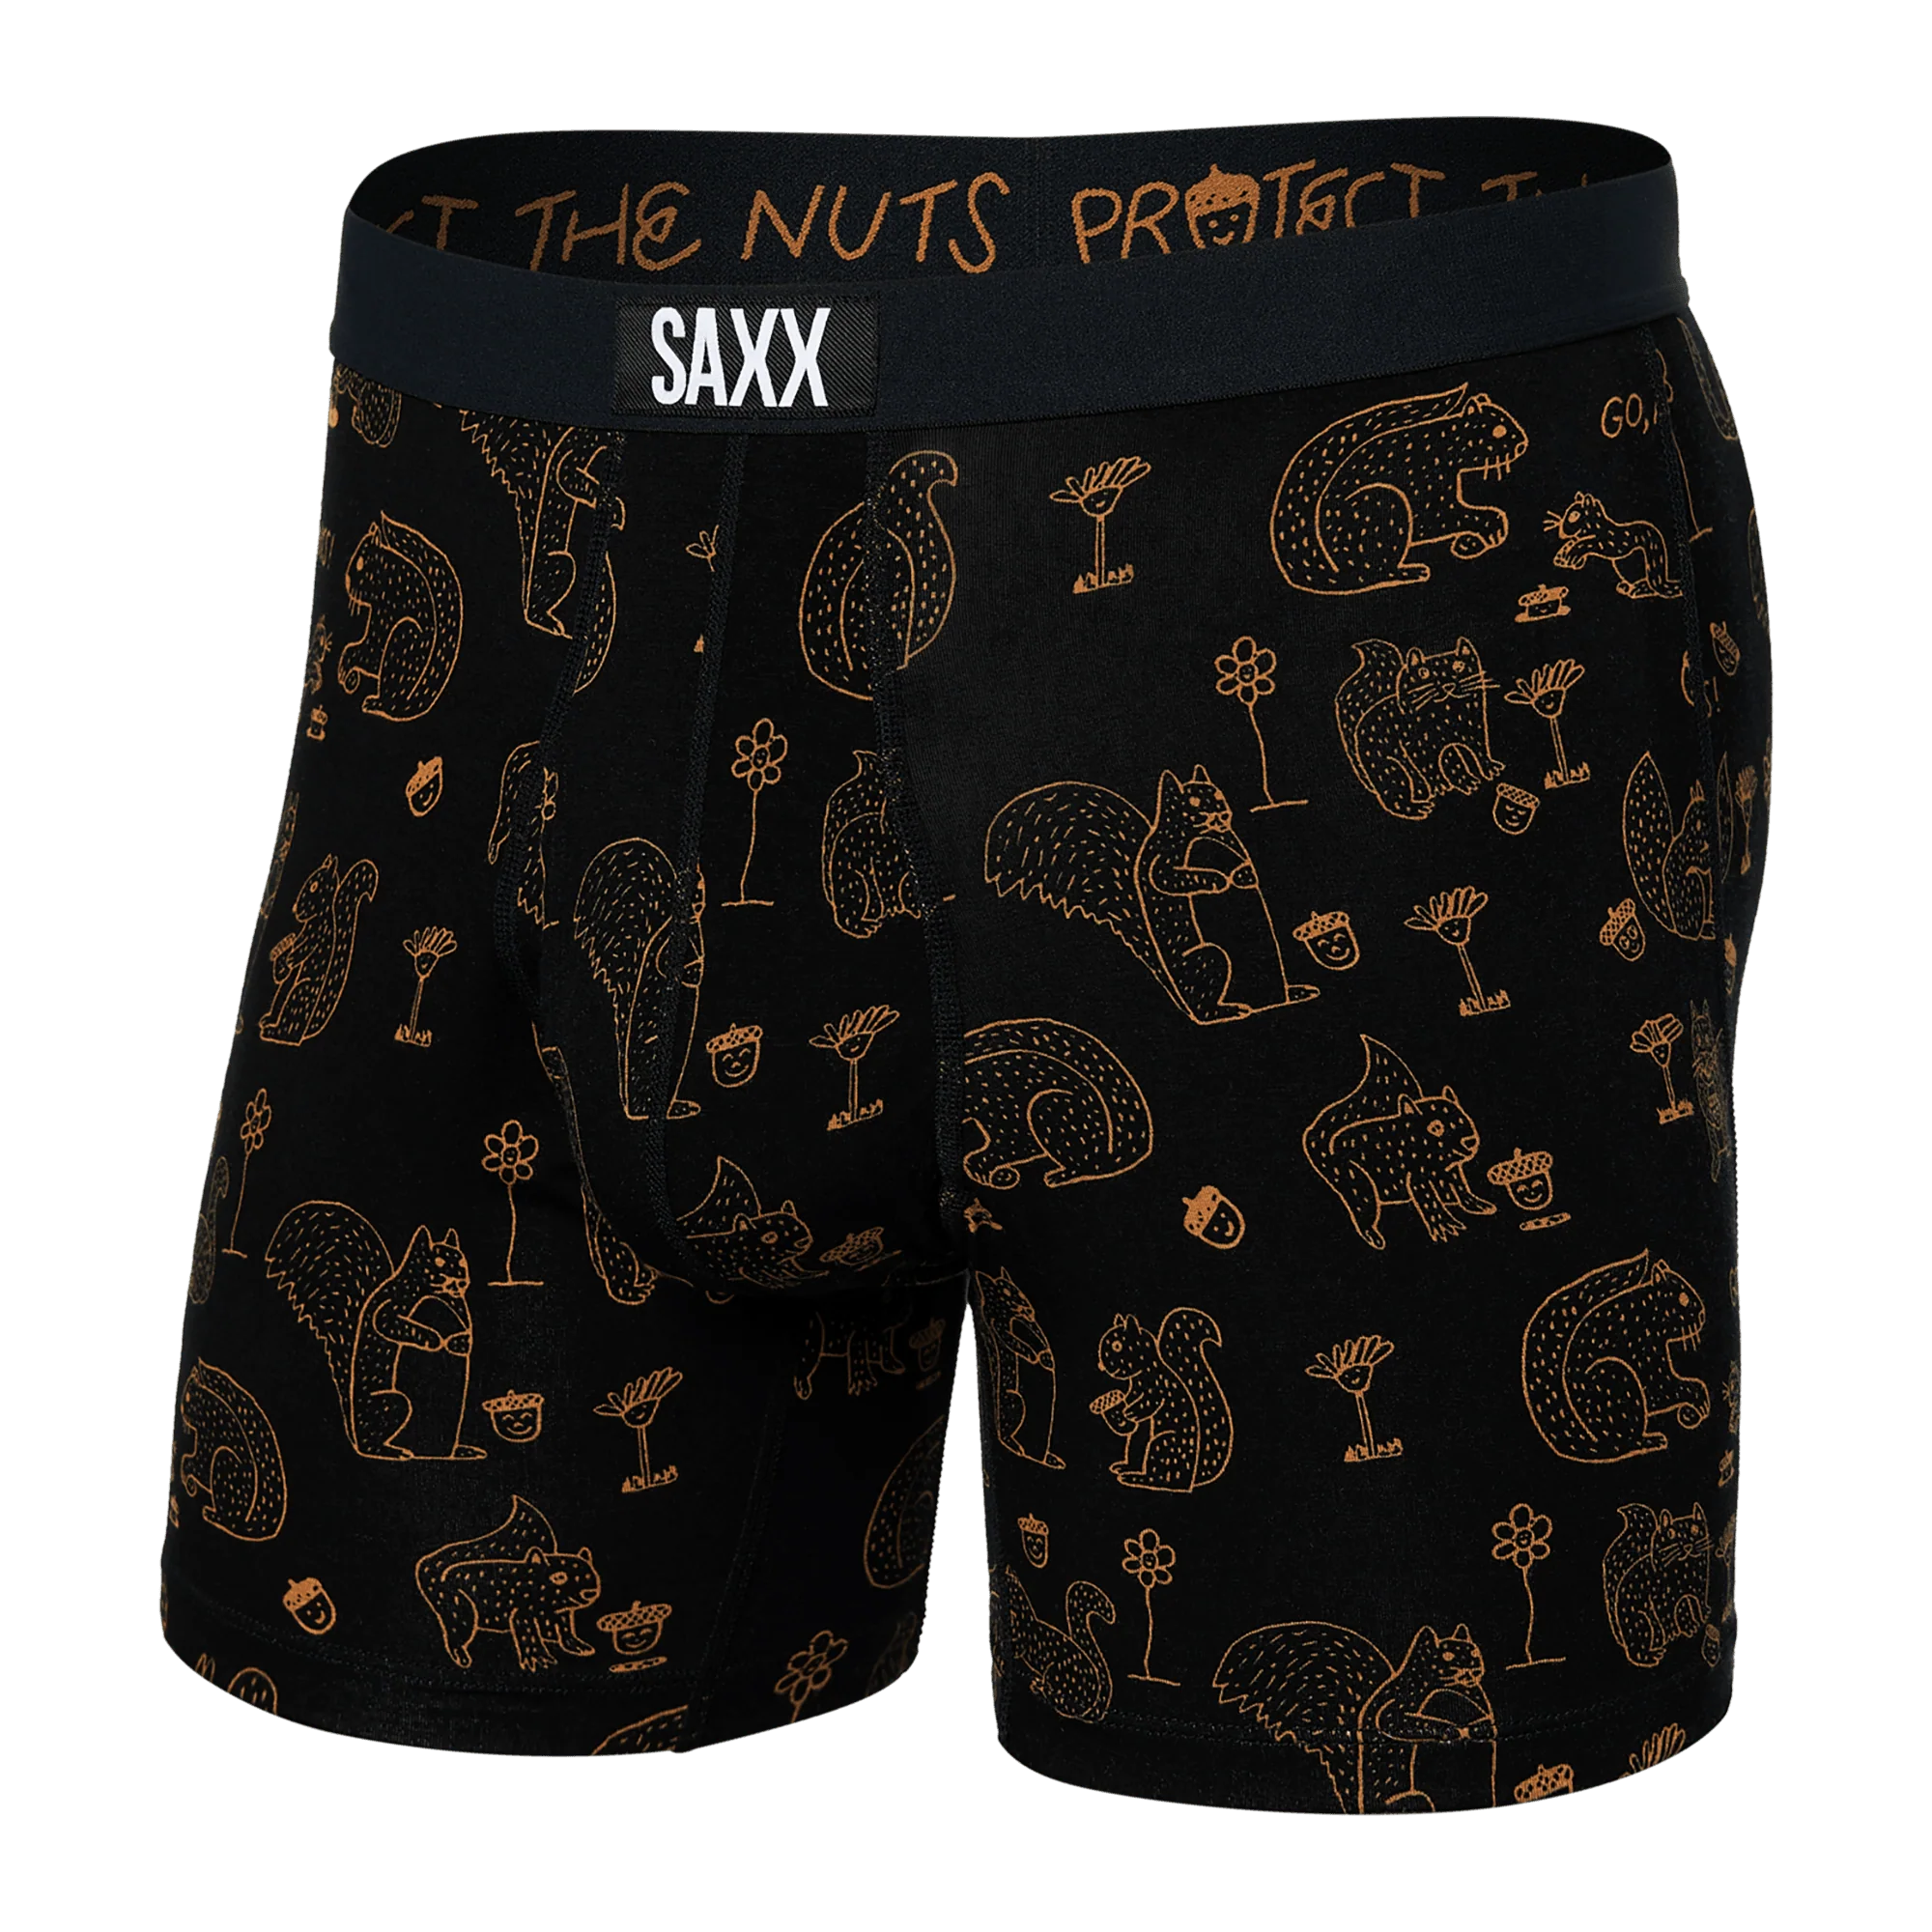 'SAXX Ultra Super Soft Boxer Brief - Protect the Nuts' in 'Black' colour